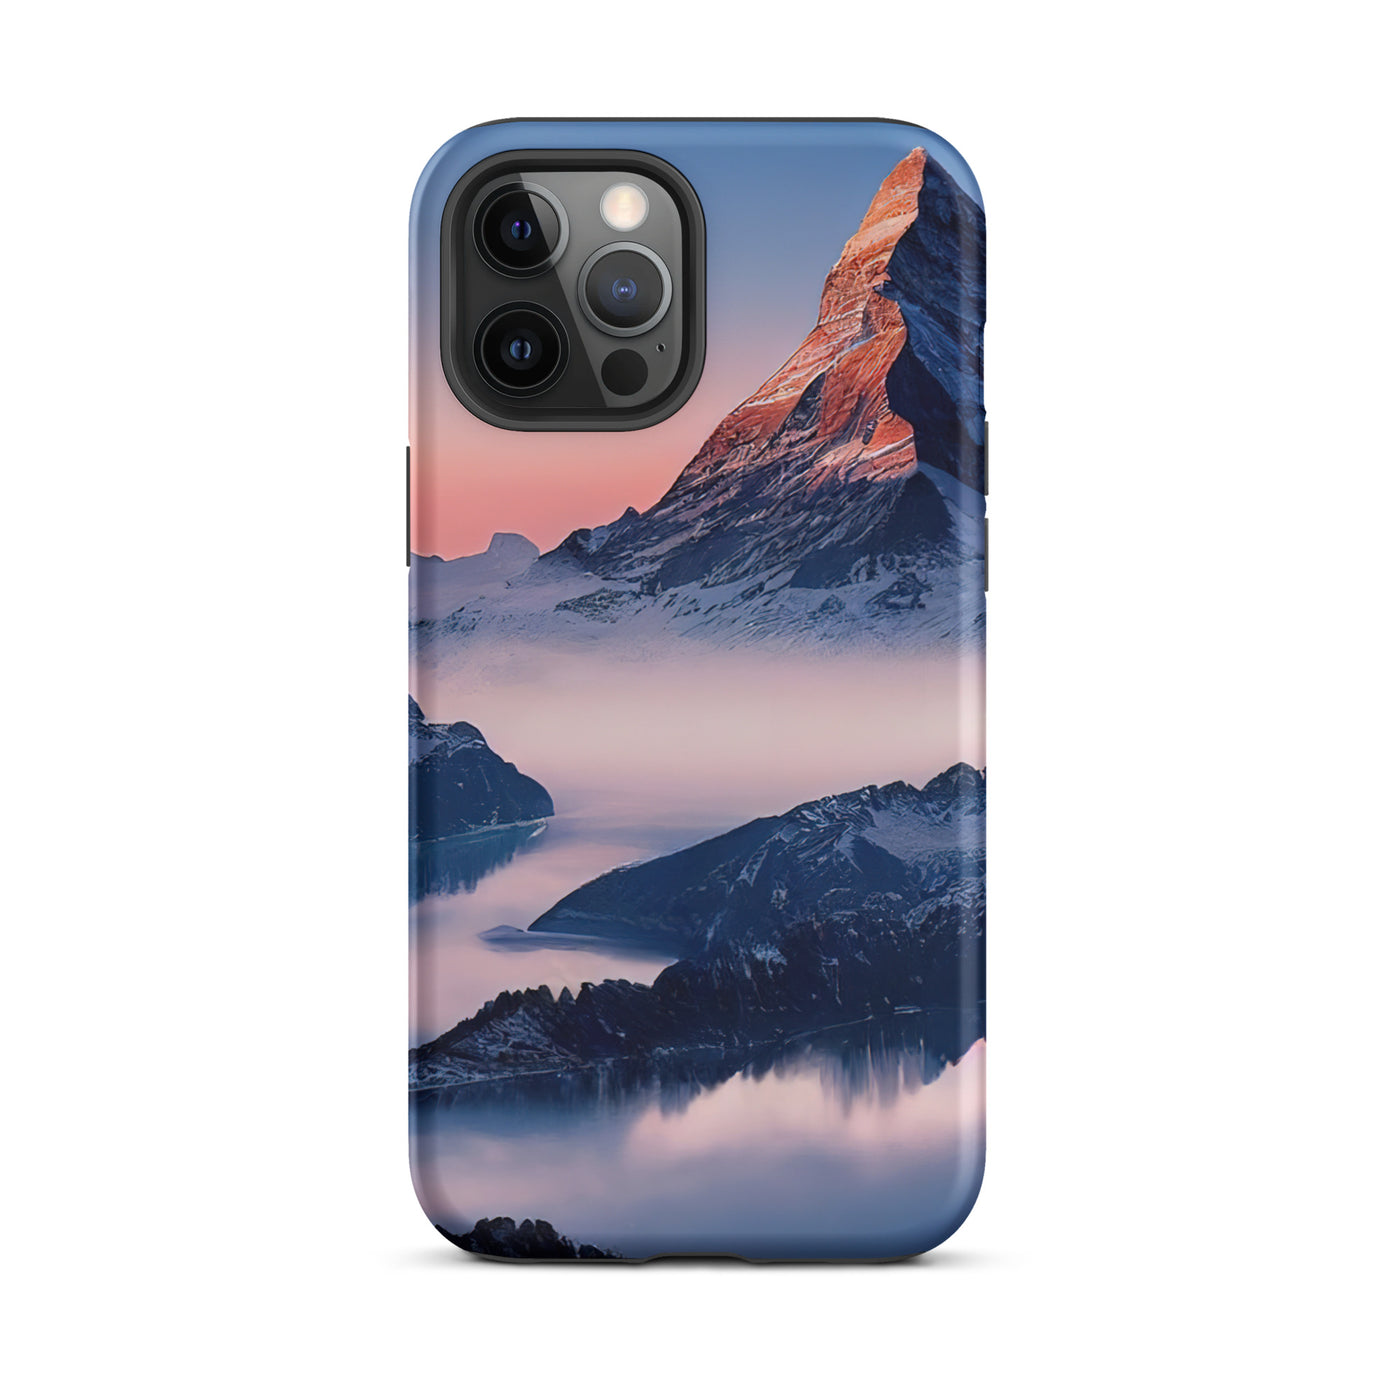 Matternhorn - Nebel - Berglandschaft - Malerei - iPhone Schutzhülle (robust) berge xxx iPhone 12 Pro Max